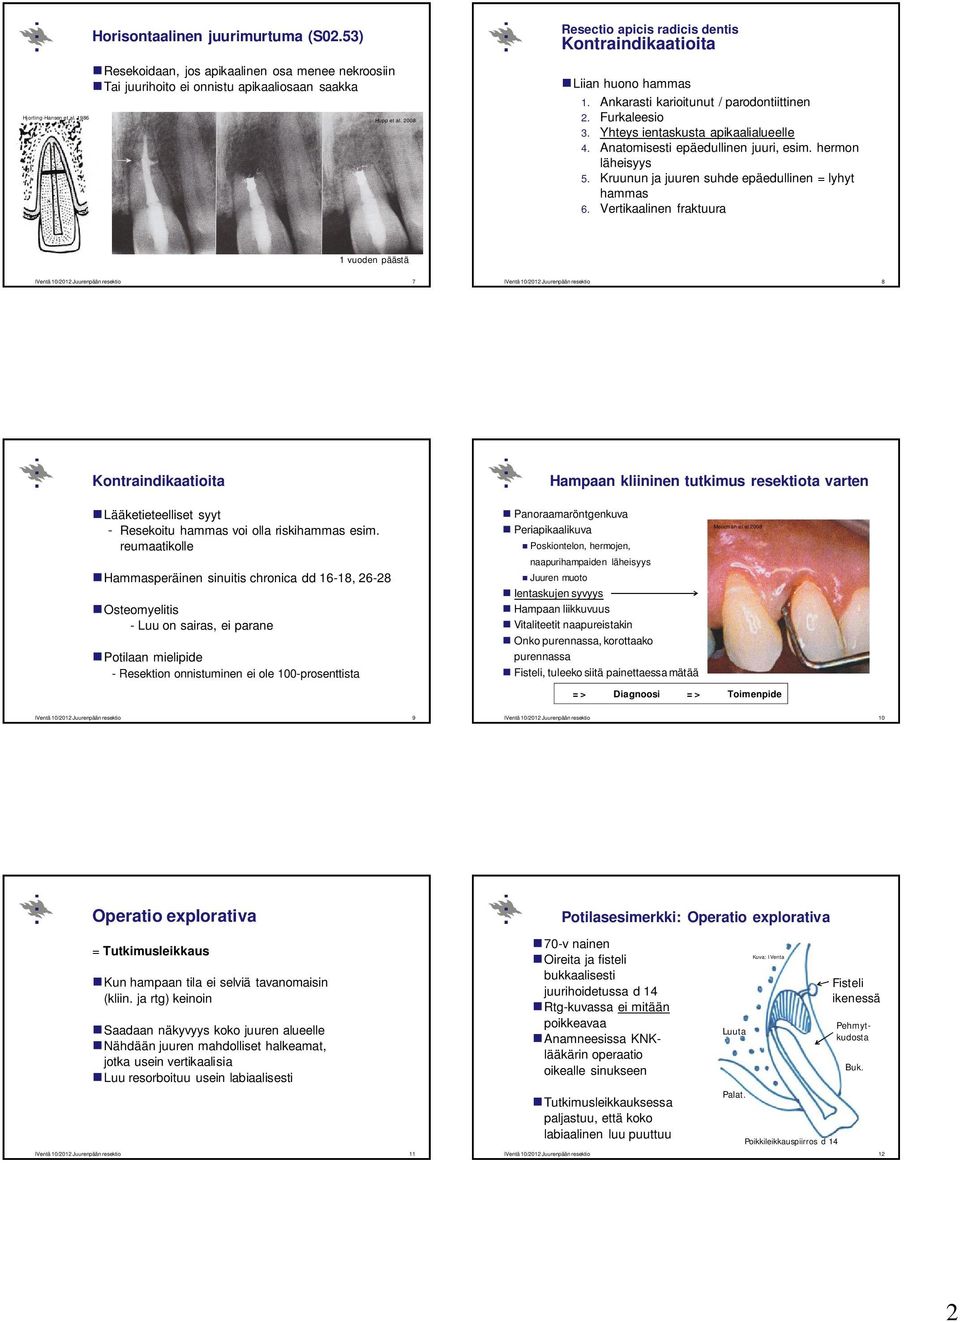 Ankarasti karioitunut / parodontiittinen 2. Furkaleesio 3. Yhteys ientaskusta apikaalialueelle 4. Anatomisesti epäedullinen juuri, esim. hermon läheisyys 5.